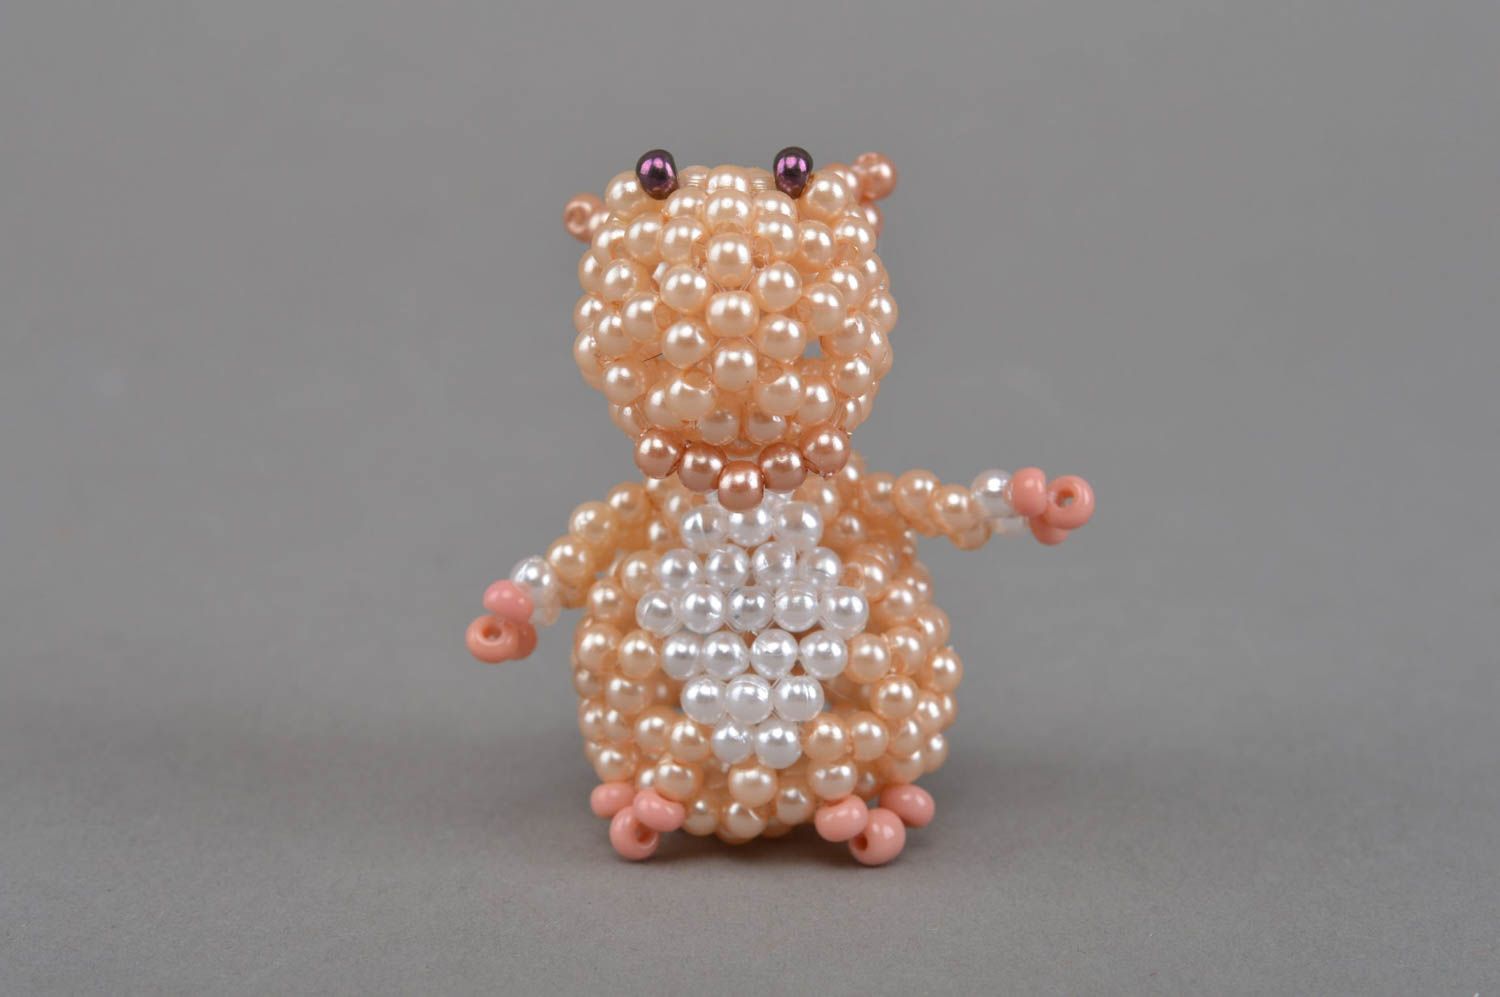 Hippo Mini Figurine aus Glasperlen für Interieur Dekor Designer Handarbeit schön foto 4